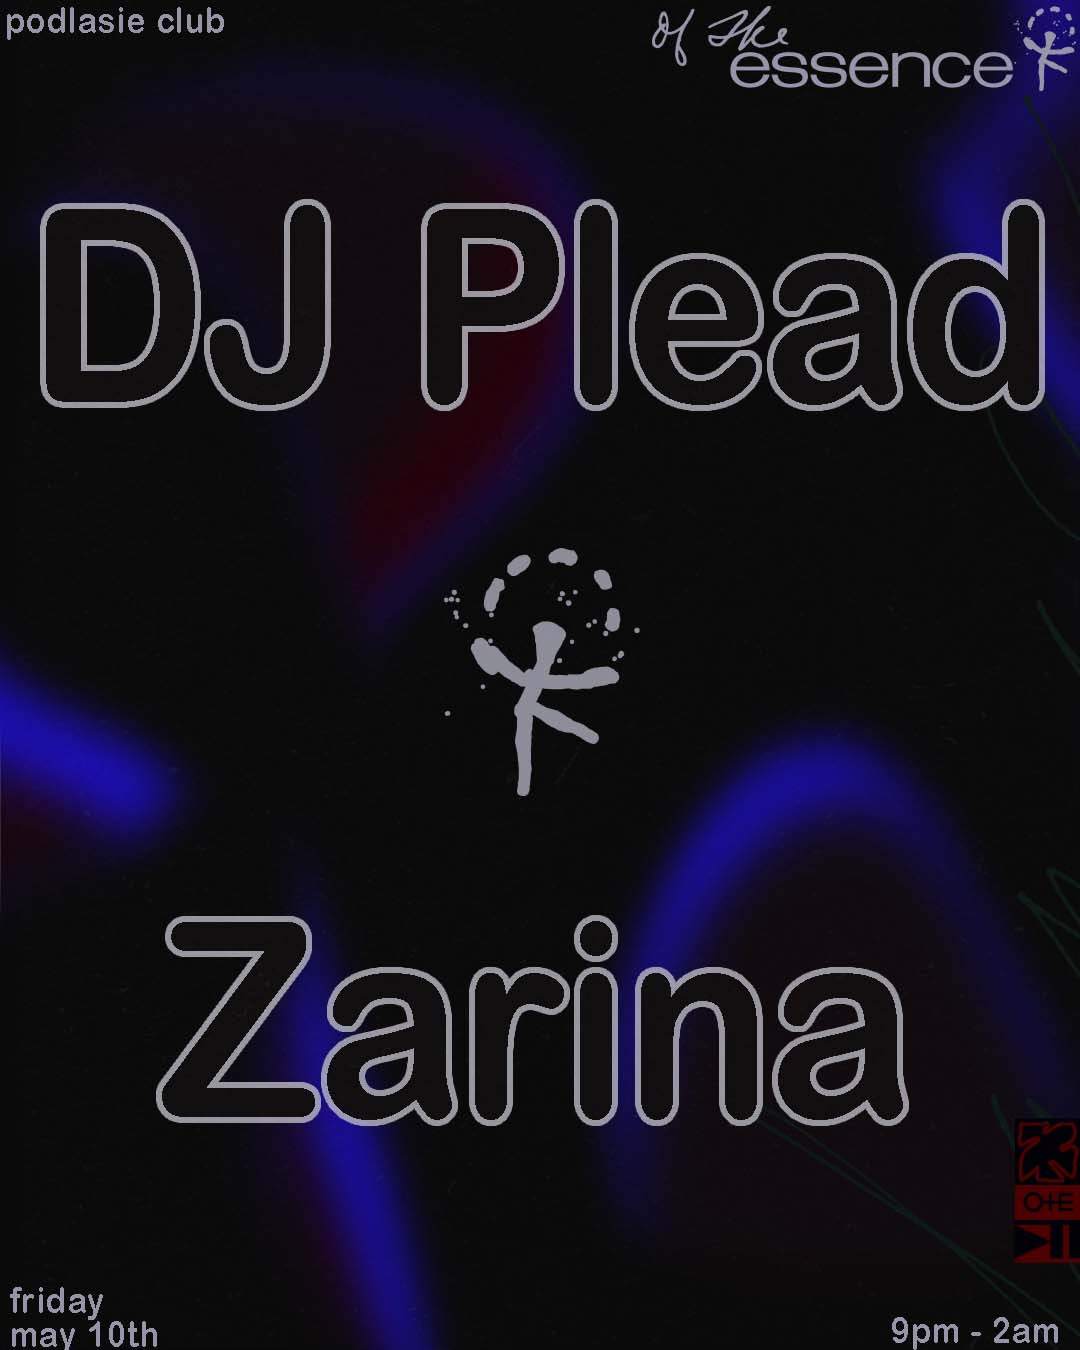 Of The Essence: DJ Plead, Zarina - Página frontal